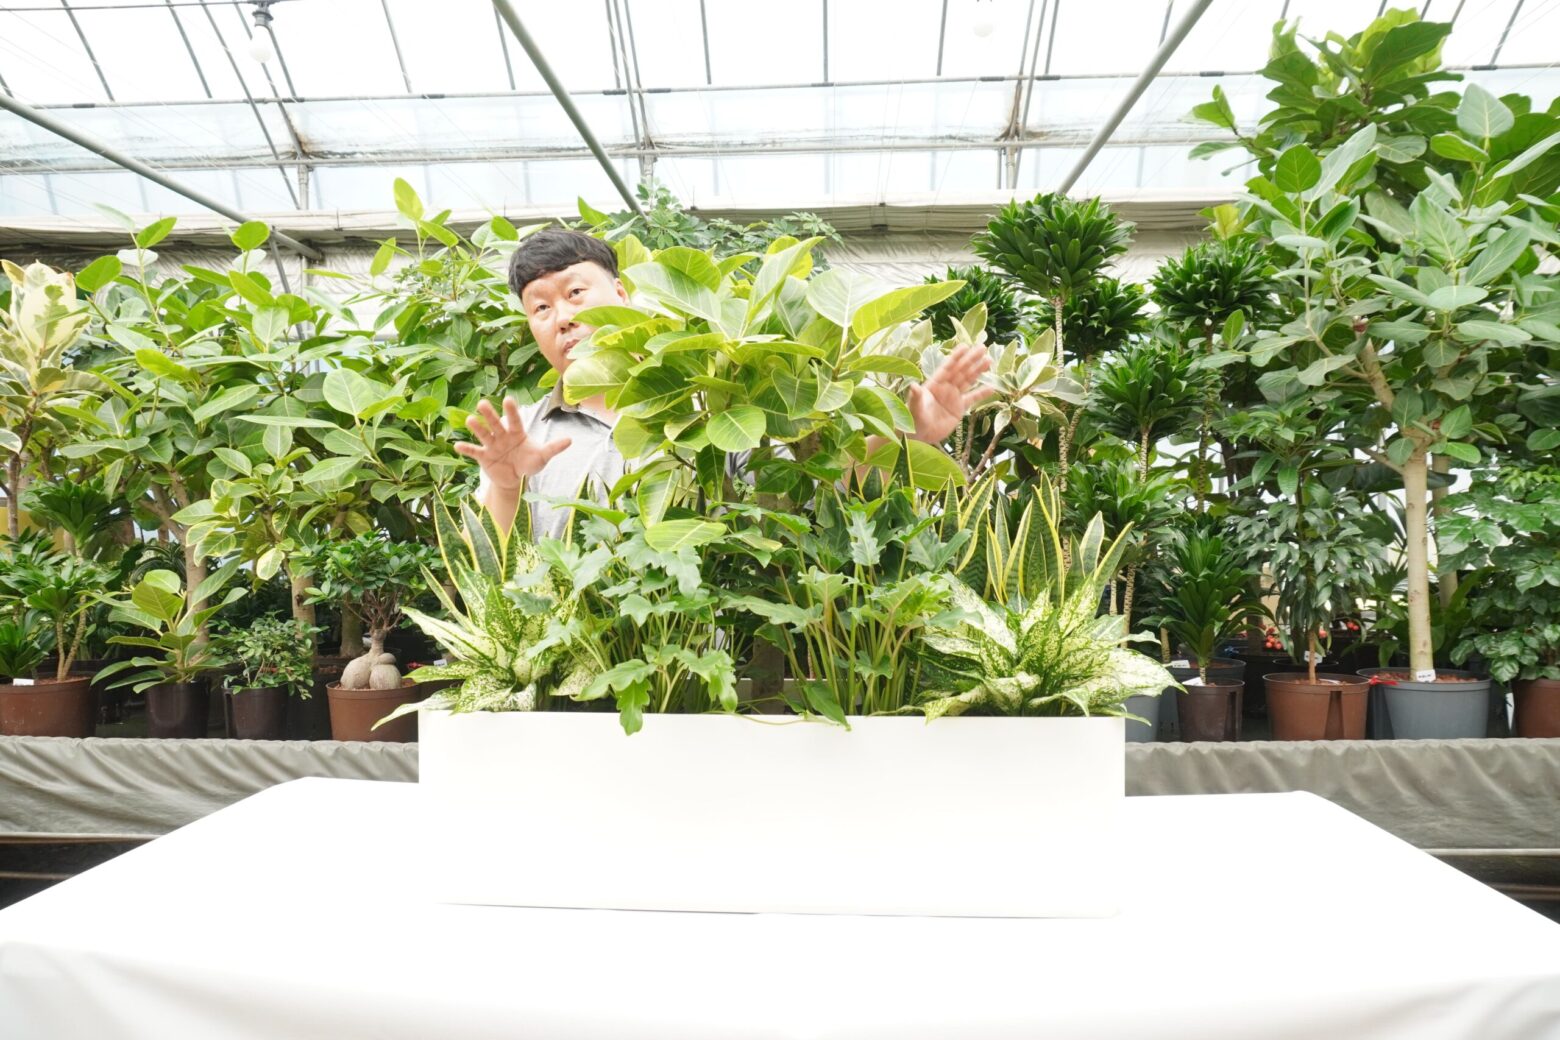 에코피플에서 수경식물 실내정원을 제작하는 과정을 보여주는 사진이다